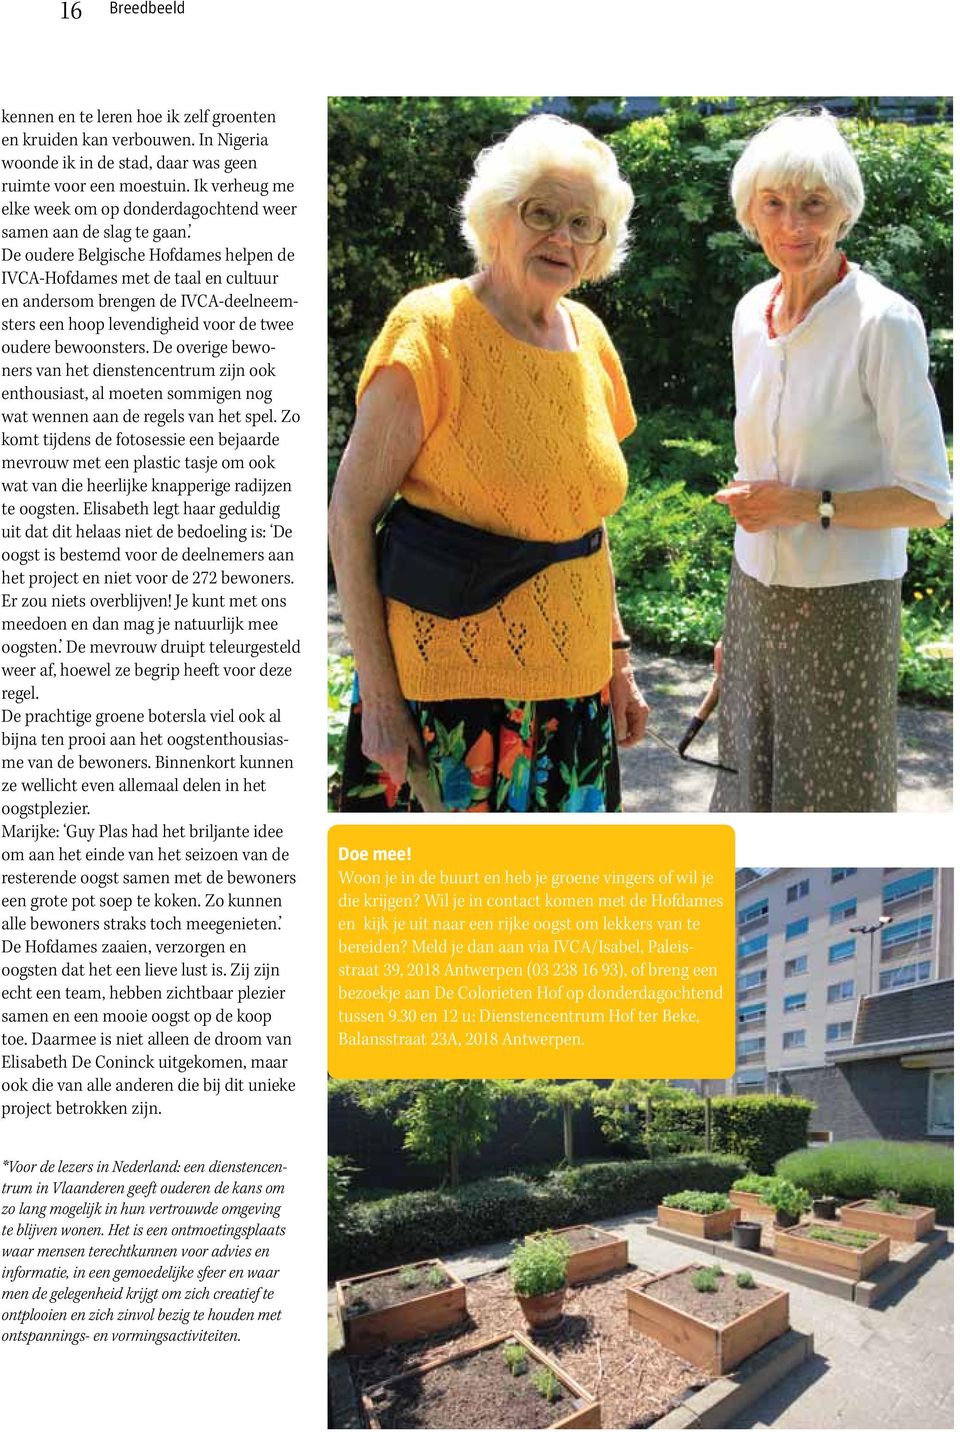 De oudere Belgische Hofdames helpen de IVCA-Hofdames met de taal en cultuur en andersom brengen de IVCA-deelneemsters een hoop levendigheid voor de twee oudere bewoonsters.